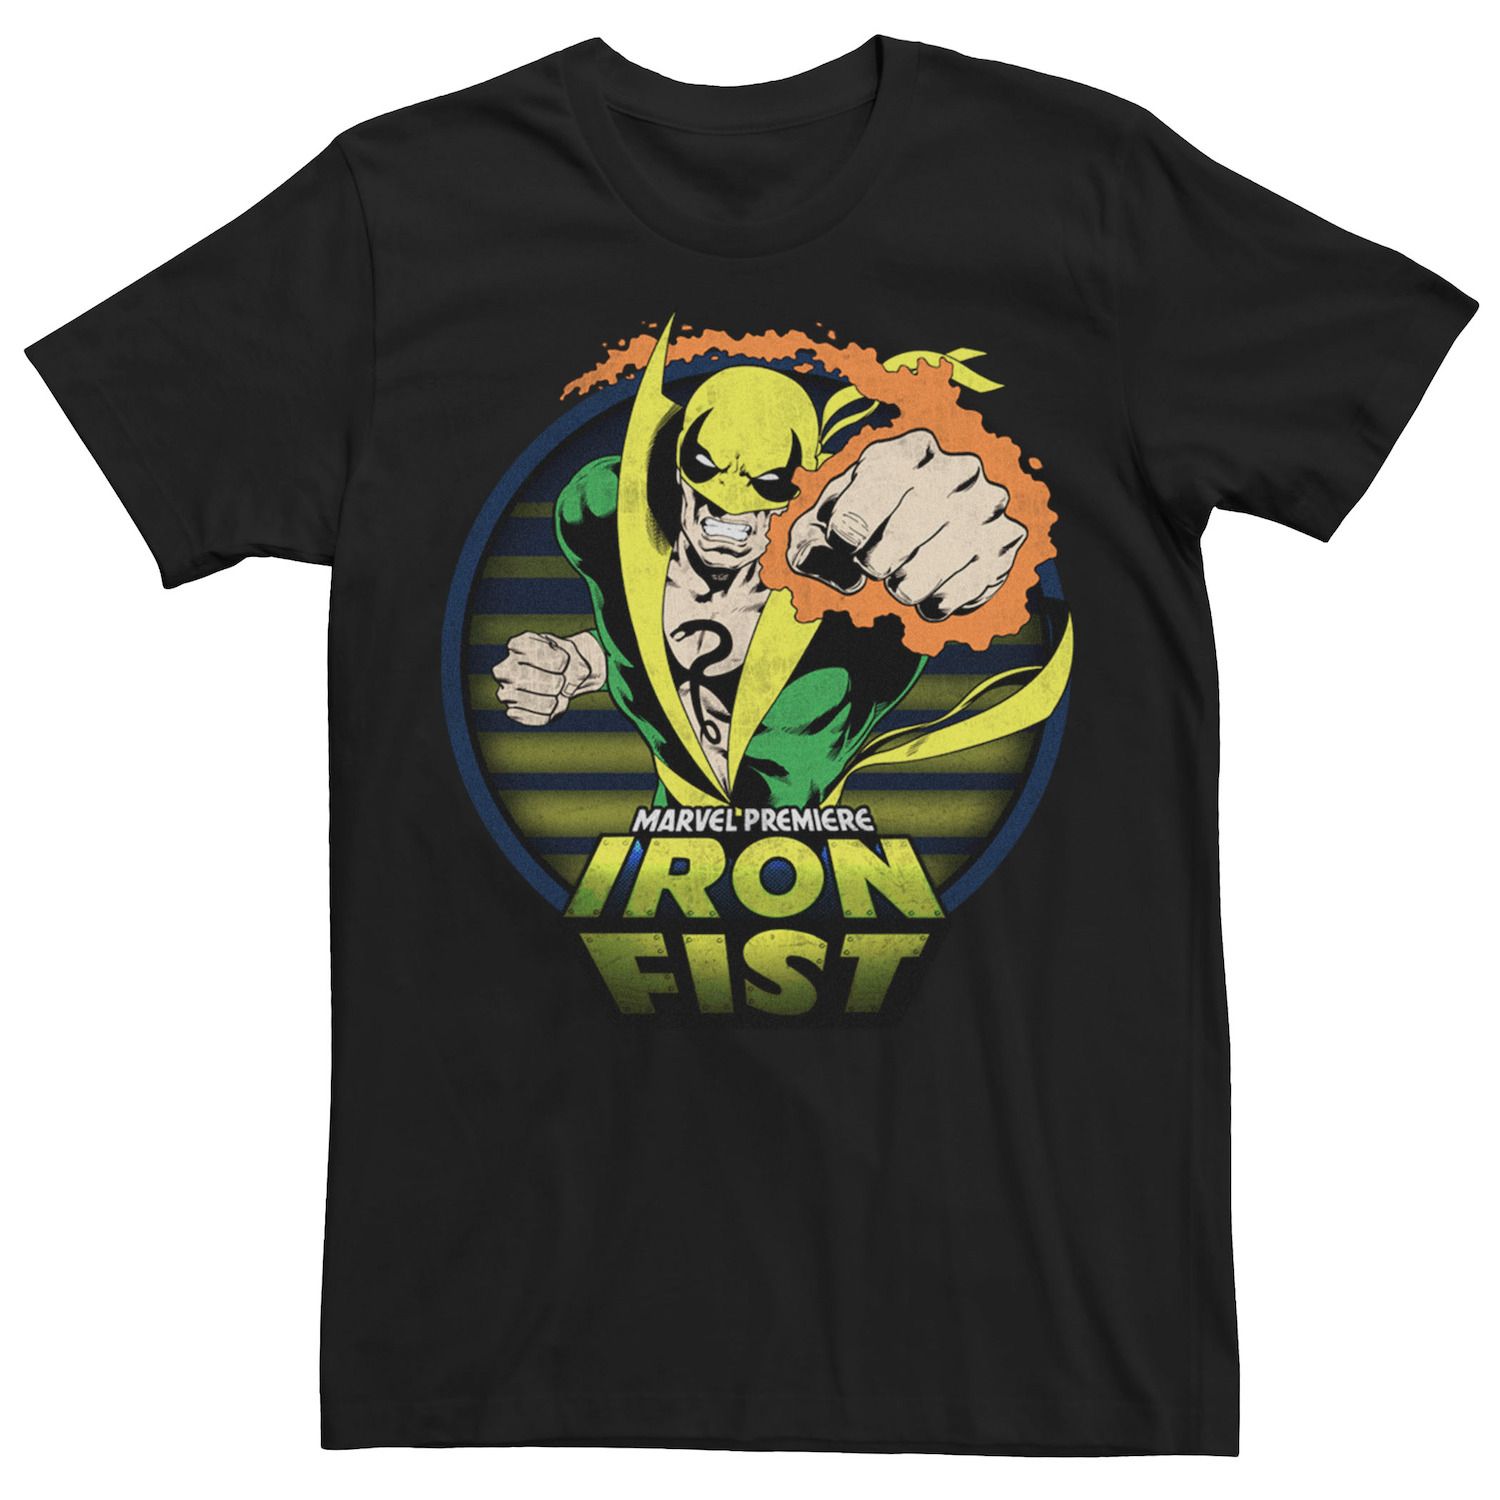 Мужская футболка с графическим рисунком Marvel Iron Fist Premiere